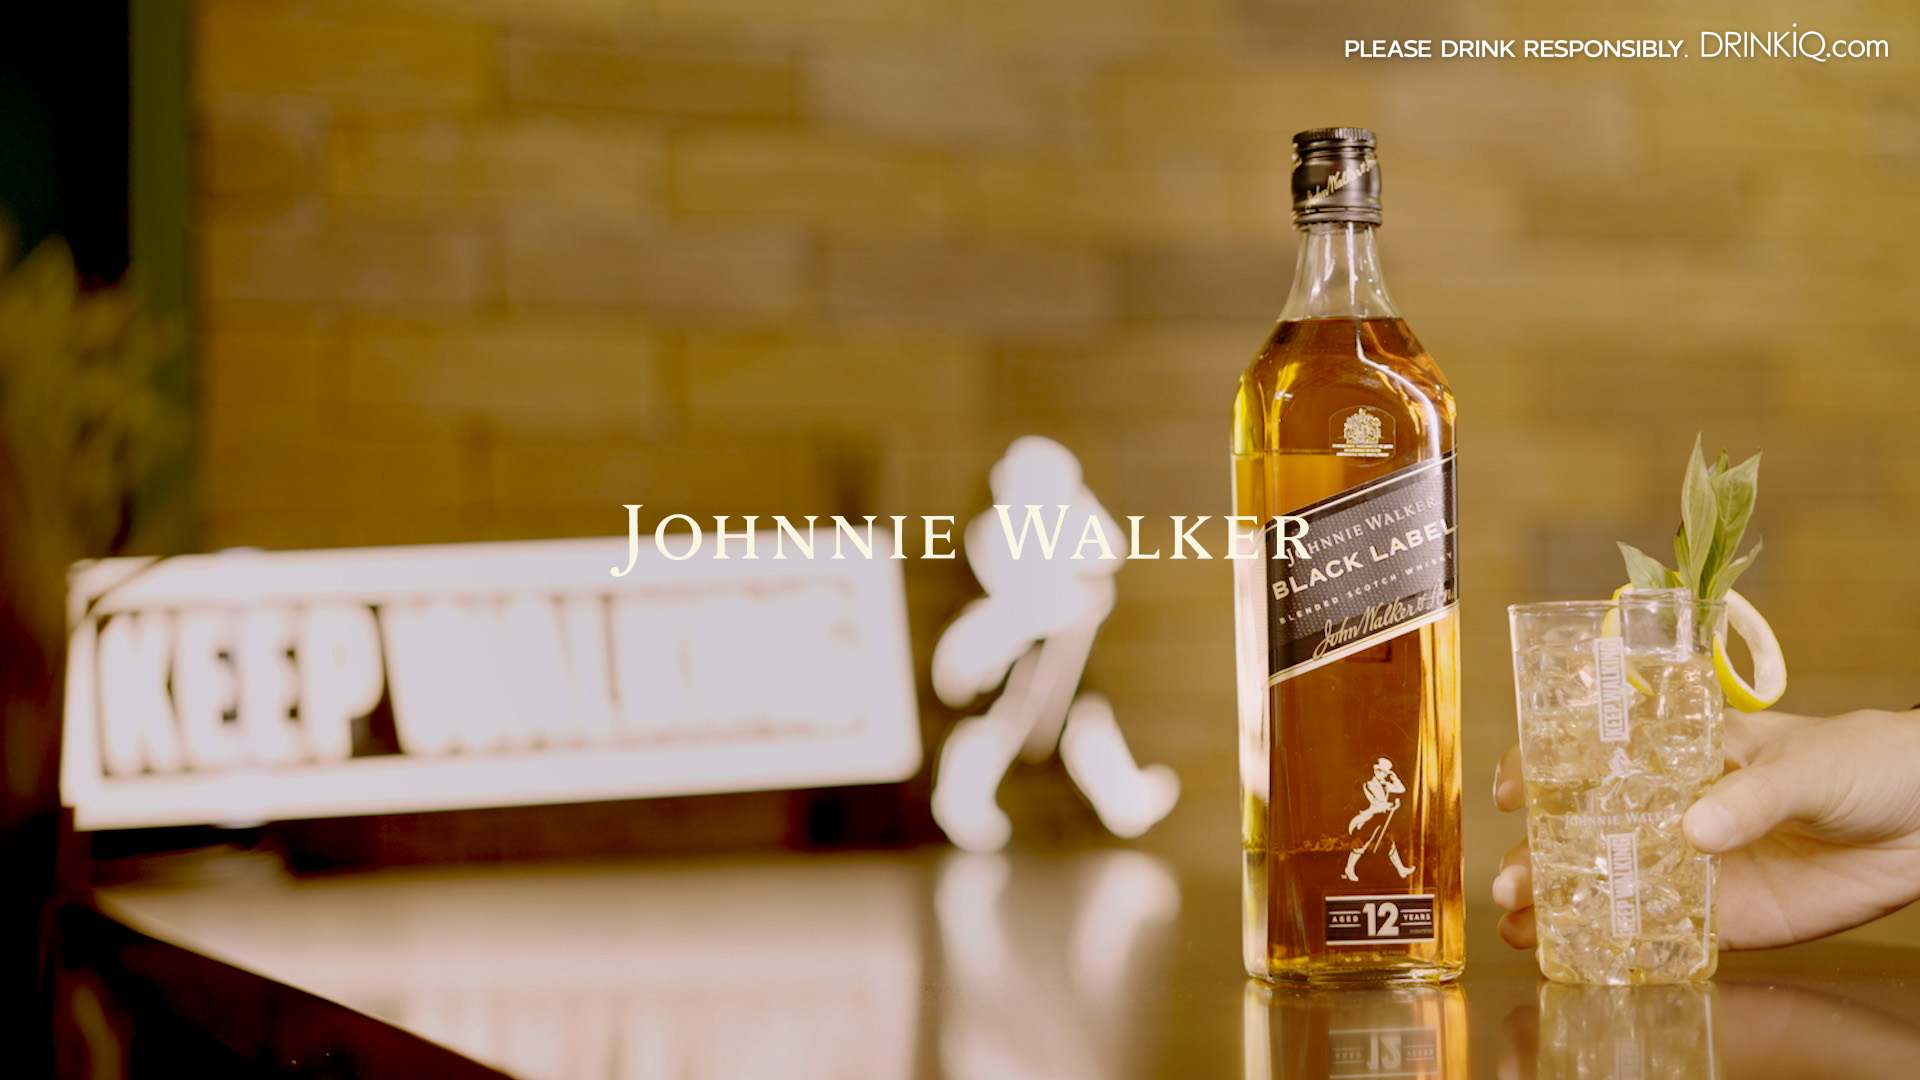 Johnnie Walker Bottle on wooden table